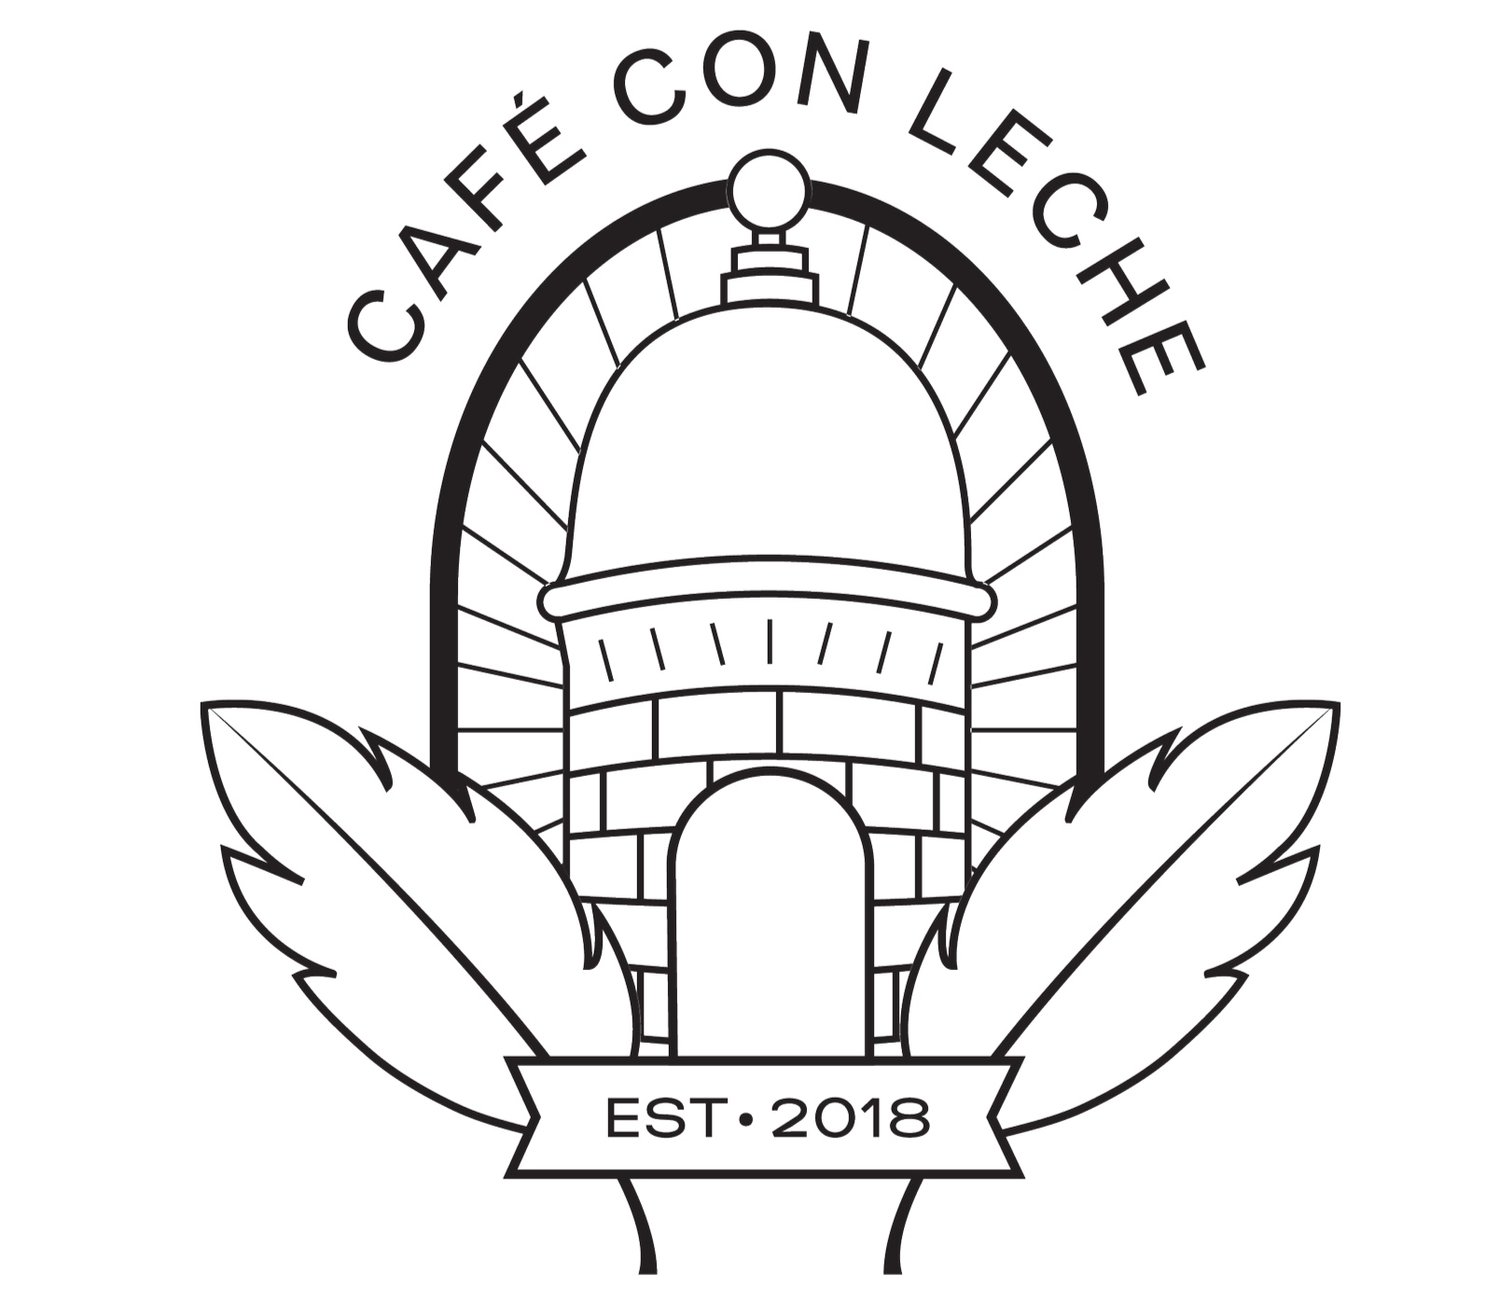 Cafe Con Leche Logo